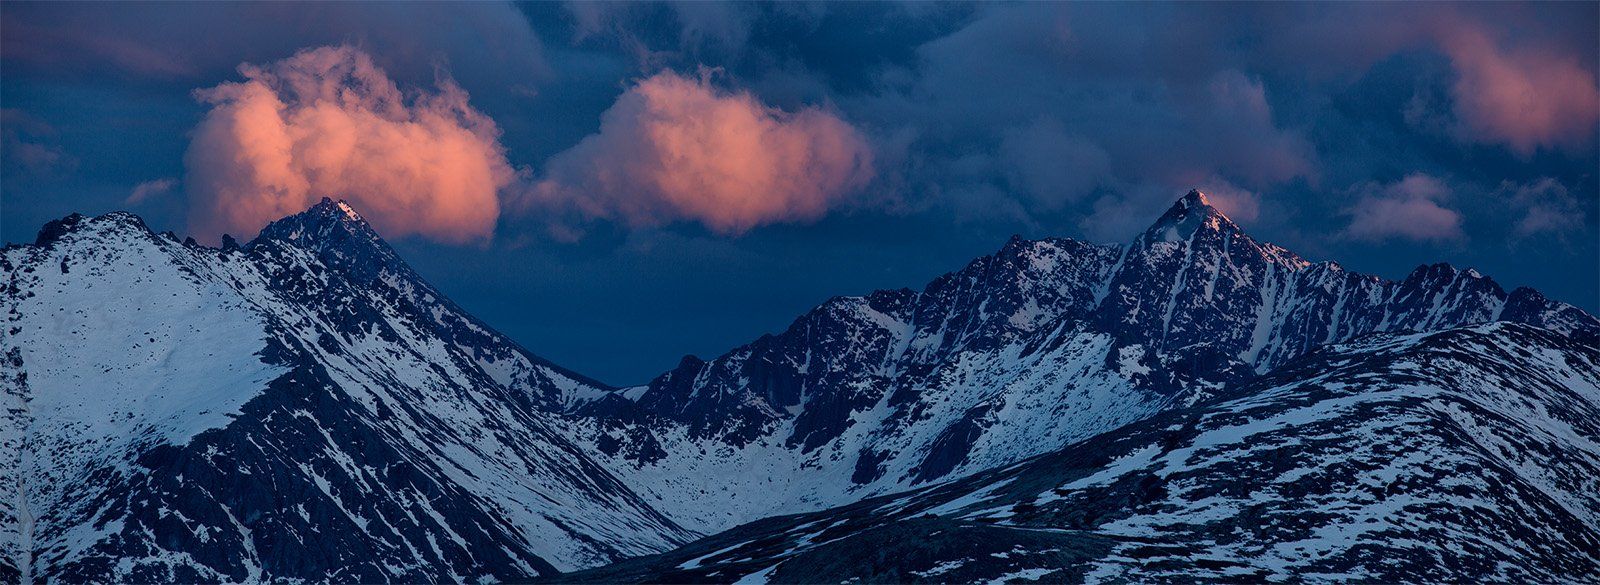 горы, закат, облака, снег, вечер, колыма, цвет, синий, красный, Антон Селезнев